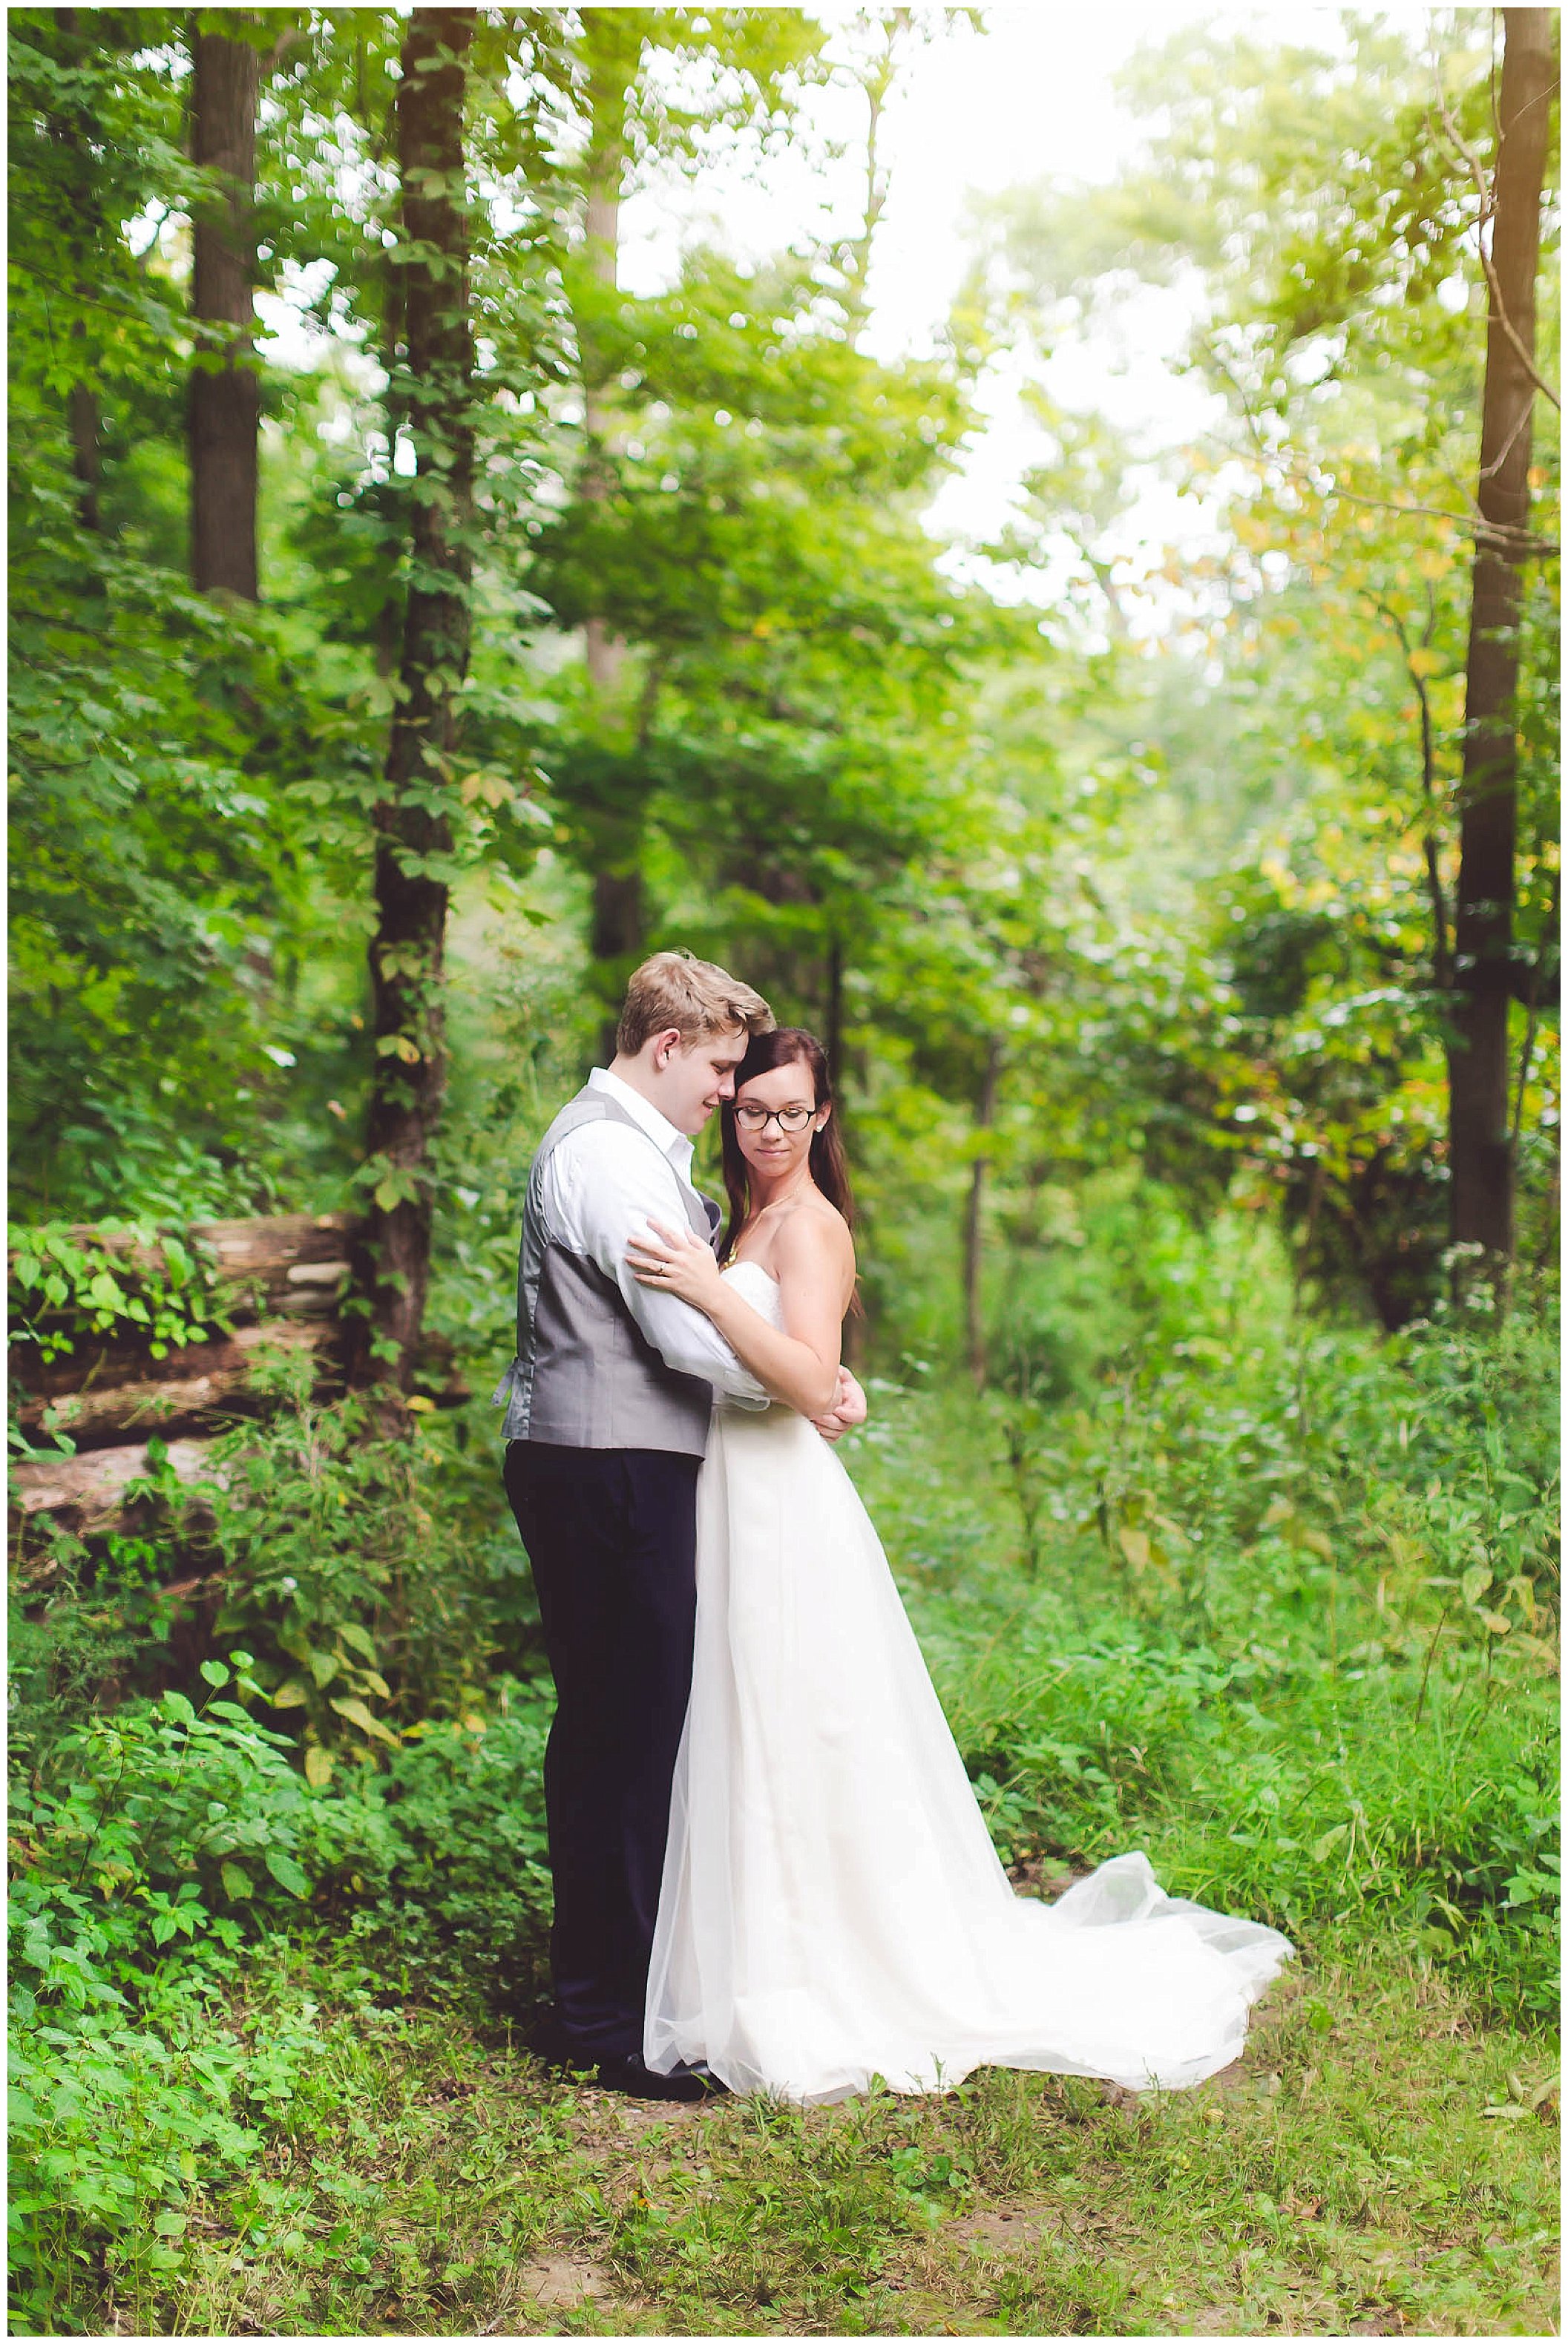 Stunning backyard wedding with twinkly lights, Fort Wayne Indiana Wedding Photographer_0040.jpg